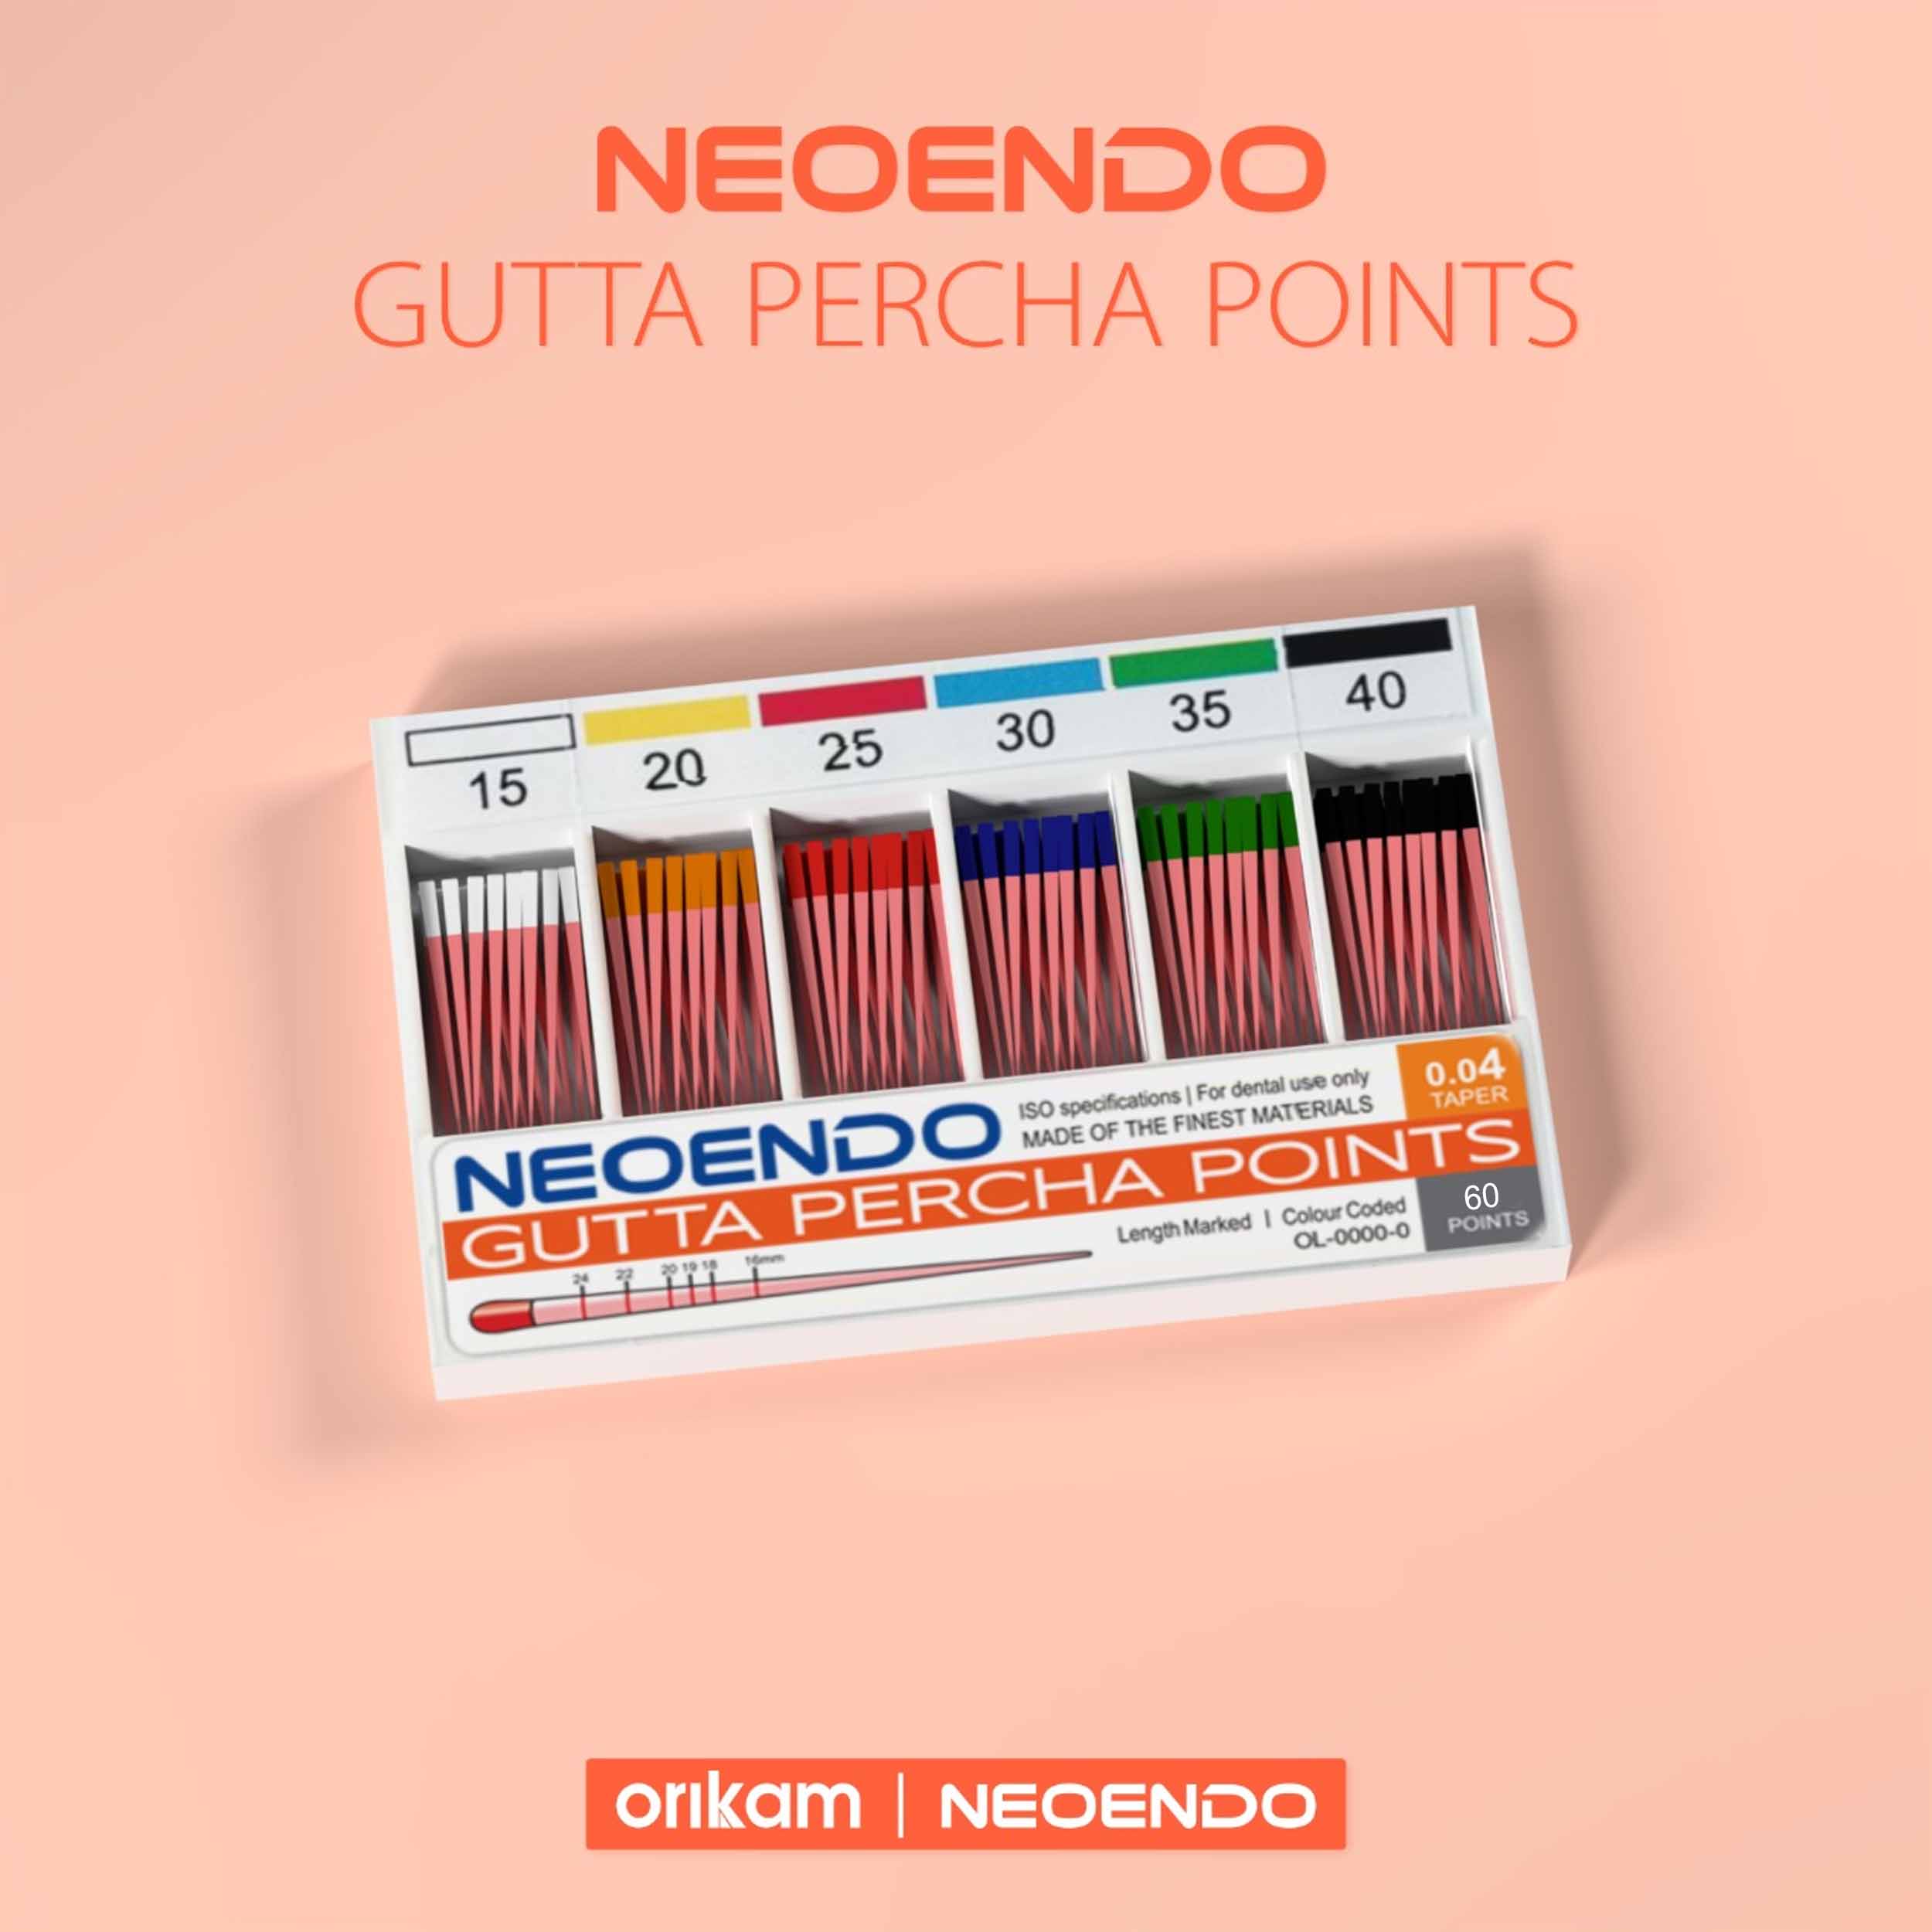 Neoendo Gutta Percha Points 25 6%